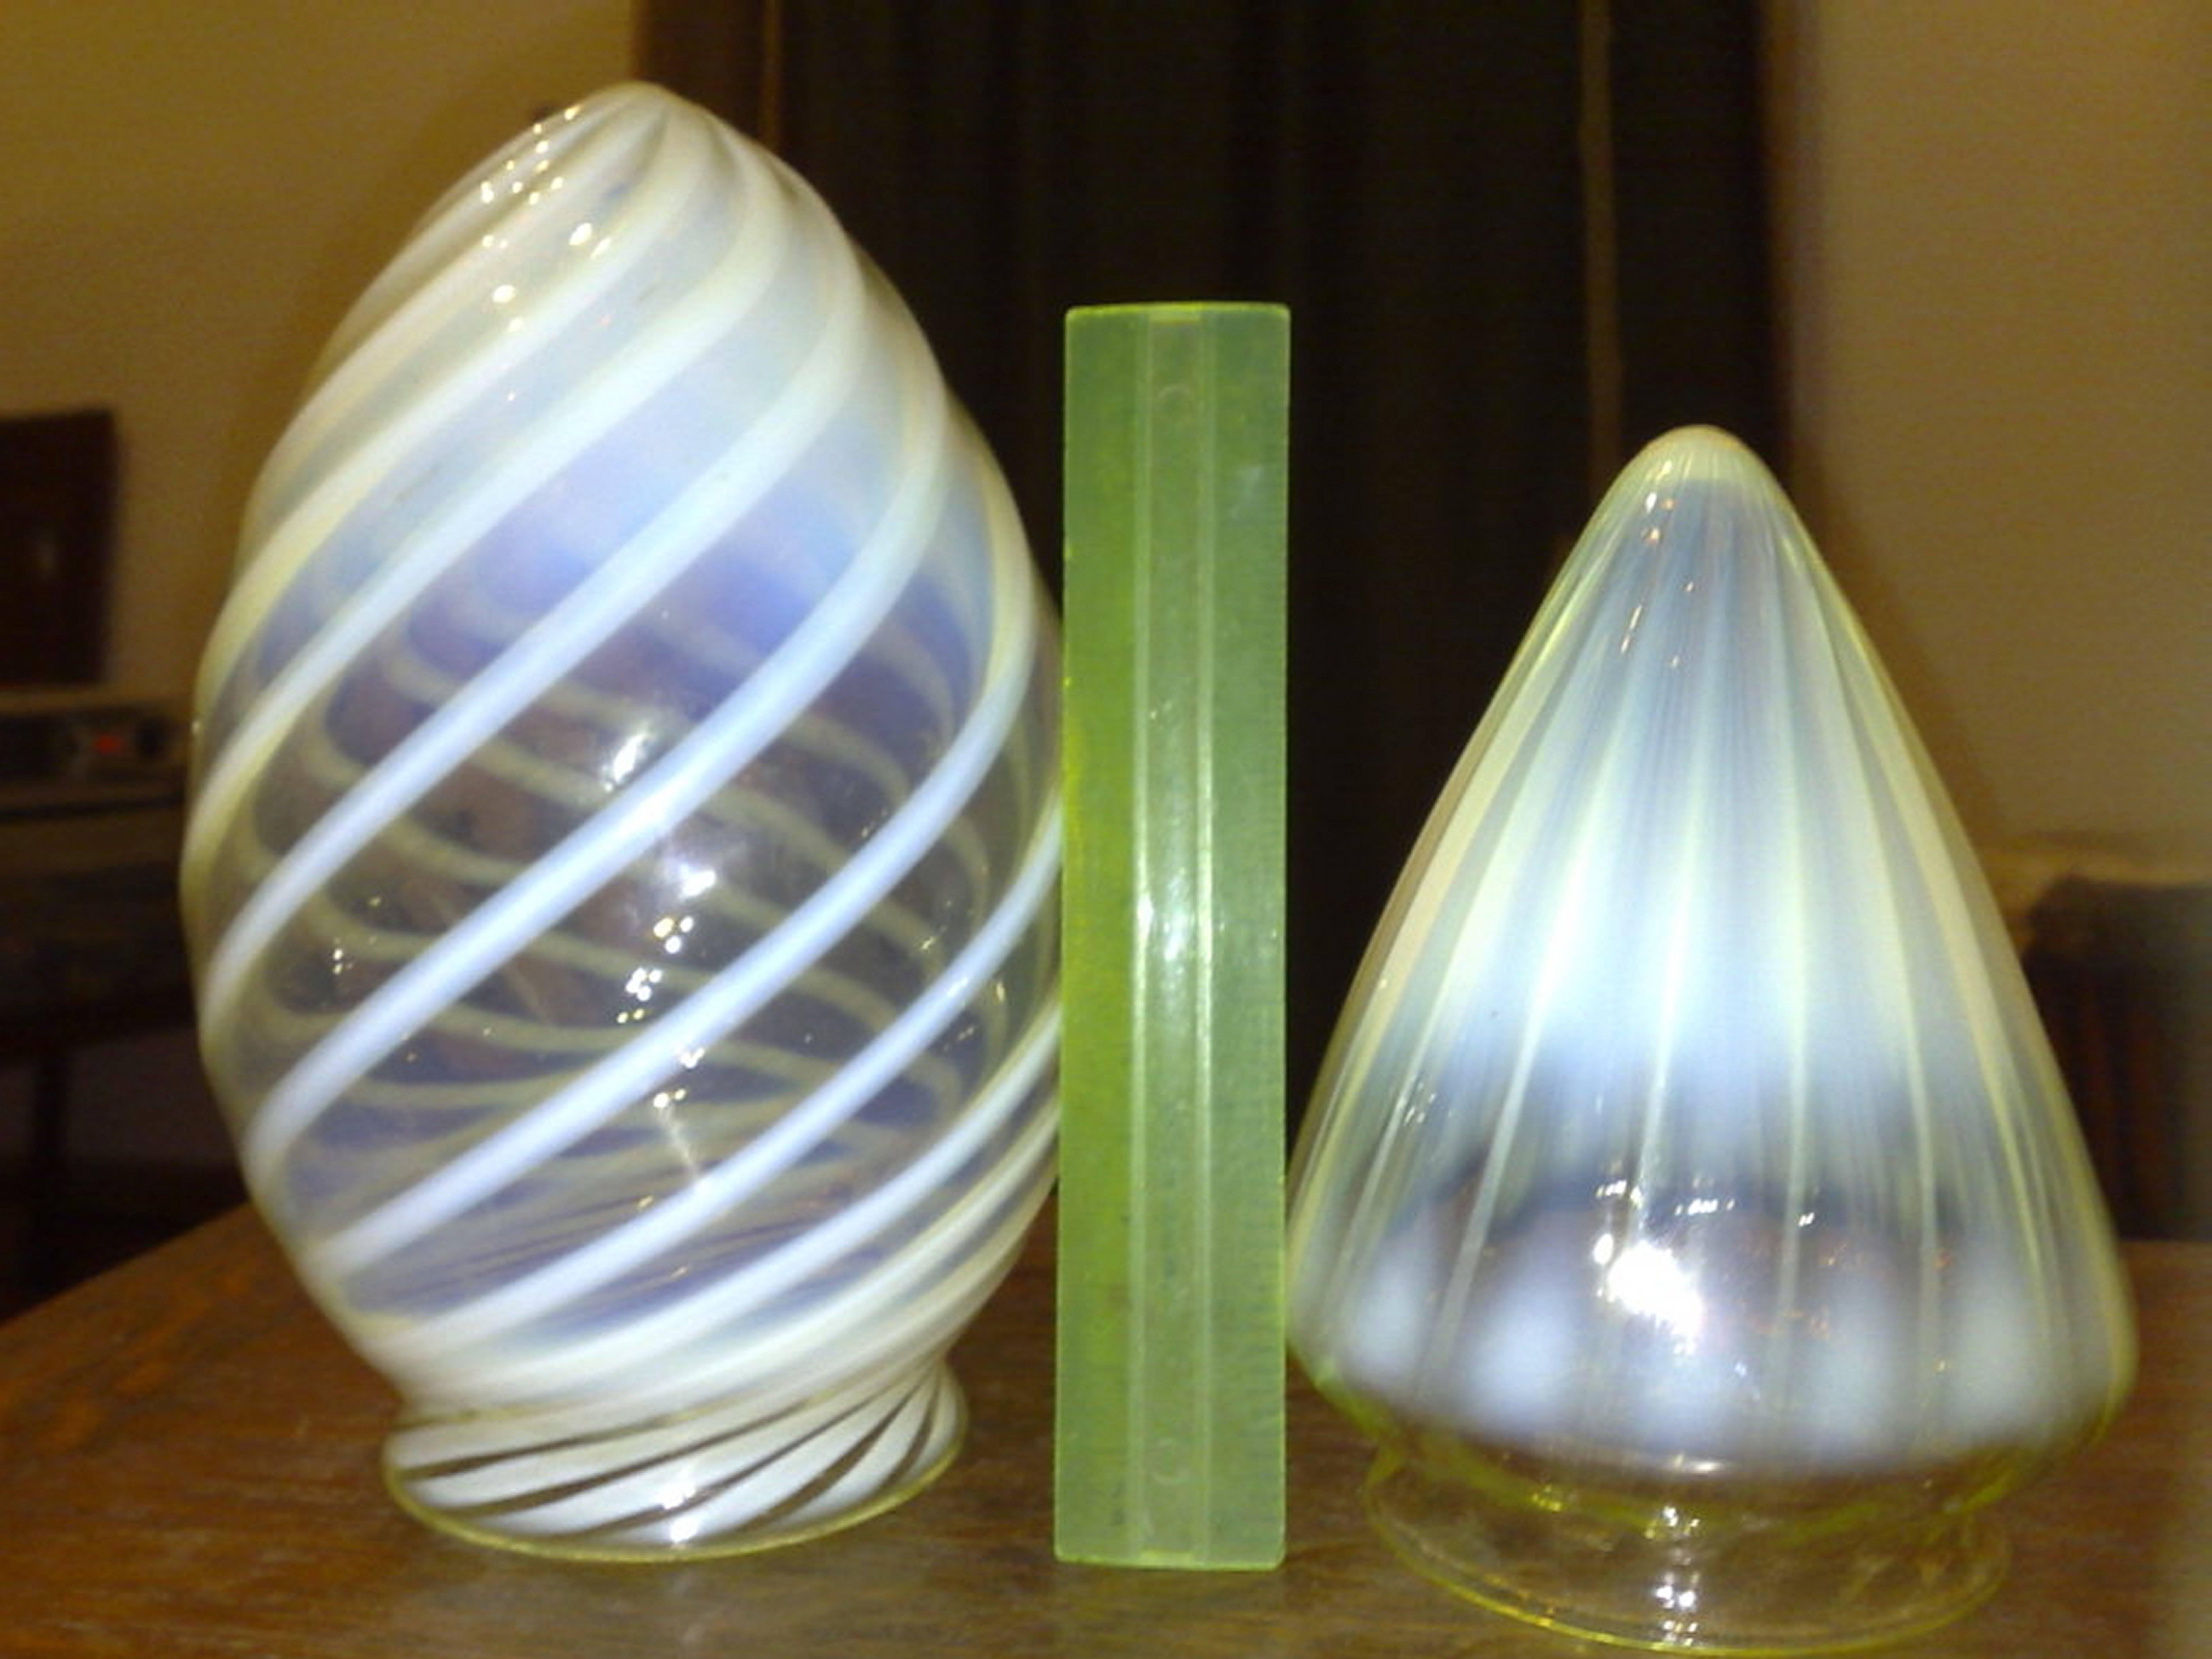 Left: A vaseline teardrop swirl shade. Measures: Width 5